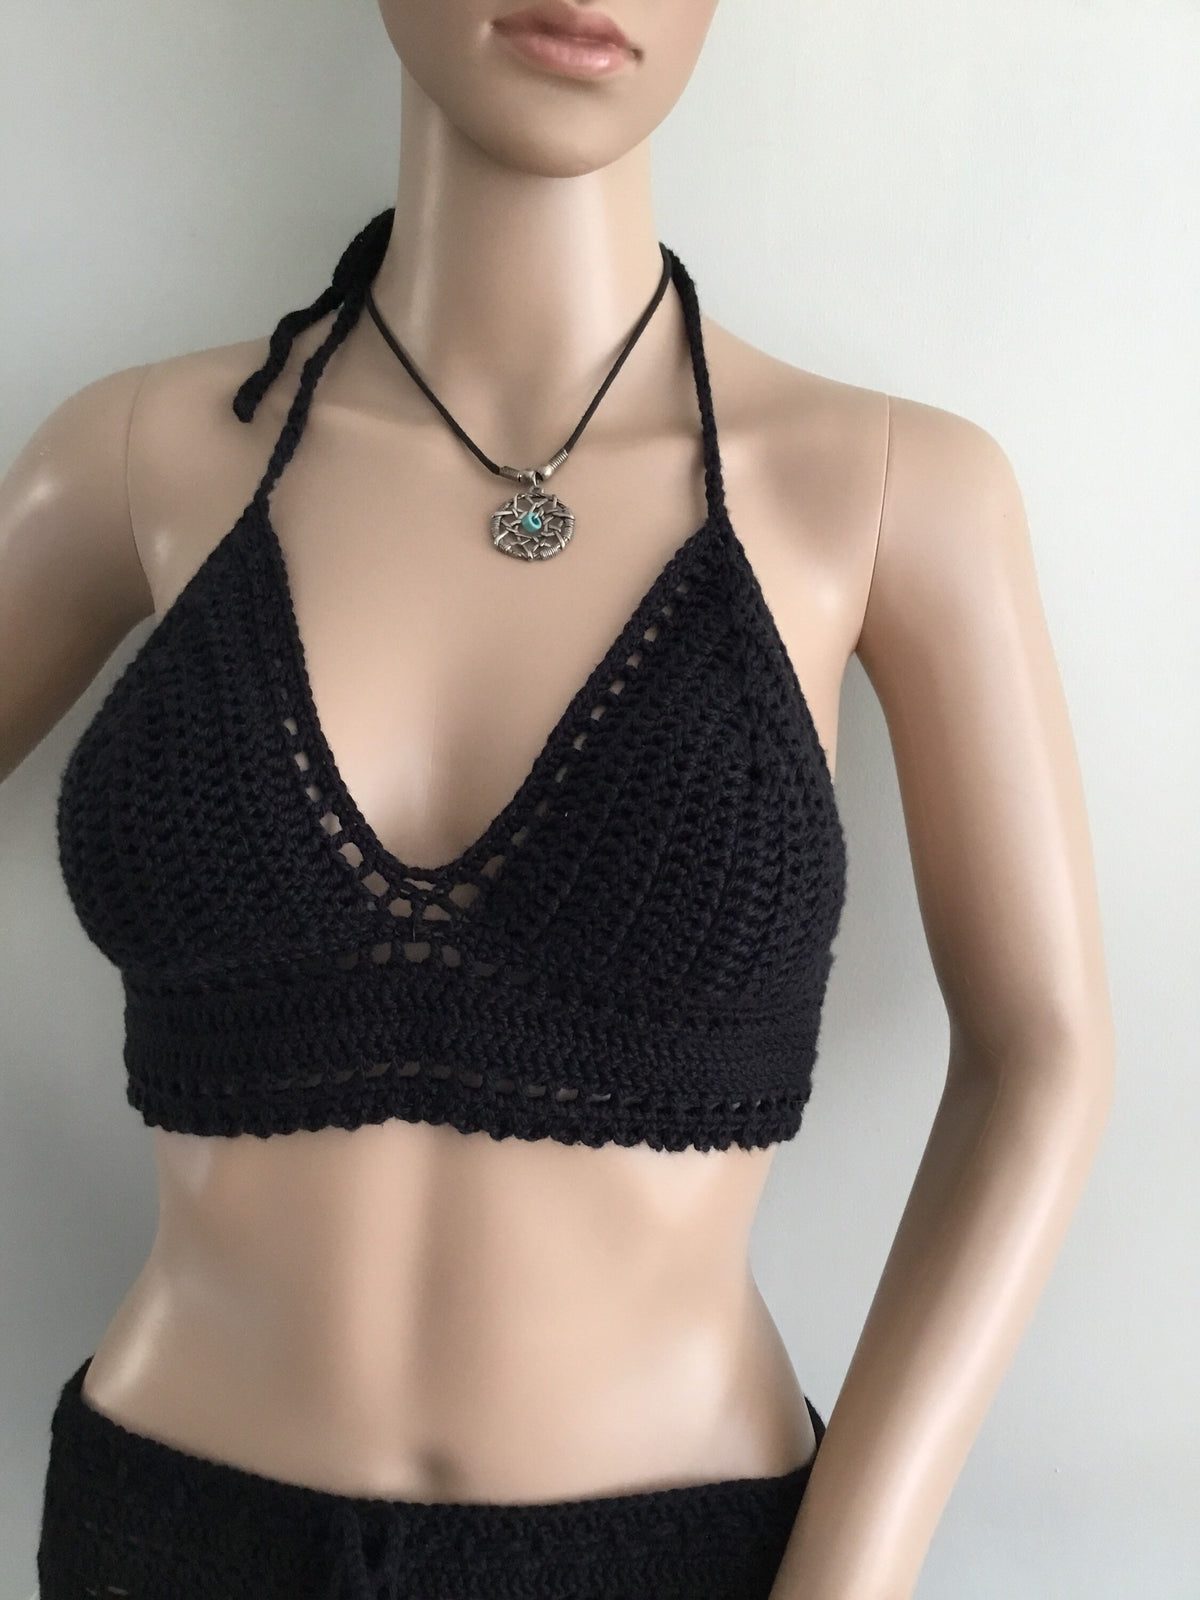 Handmade Crochet Black Halter Top Adjustable Padded Bralette